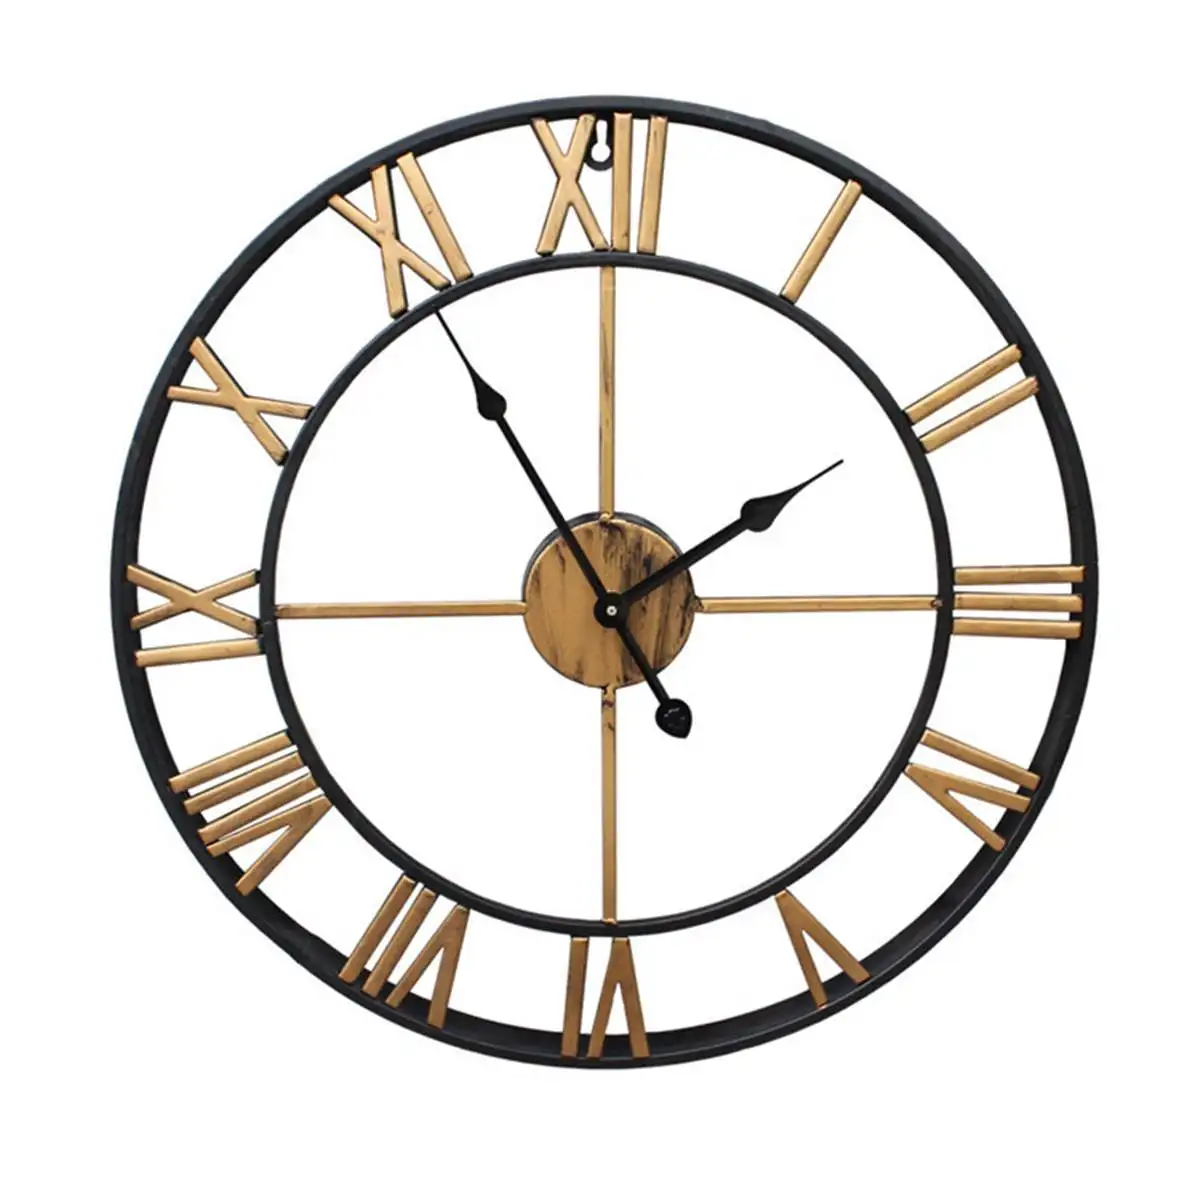 Nordic металла с римскими цифрами настенные часы в стиле ретро железная круглая лицевая сторона черного и золотого цвета большие напольные часы с цветами 40/47 см украшение дома